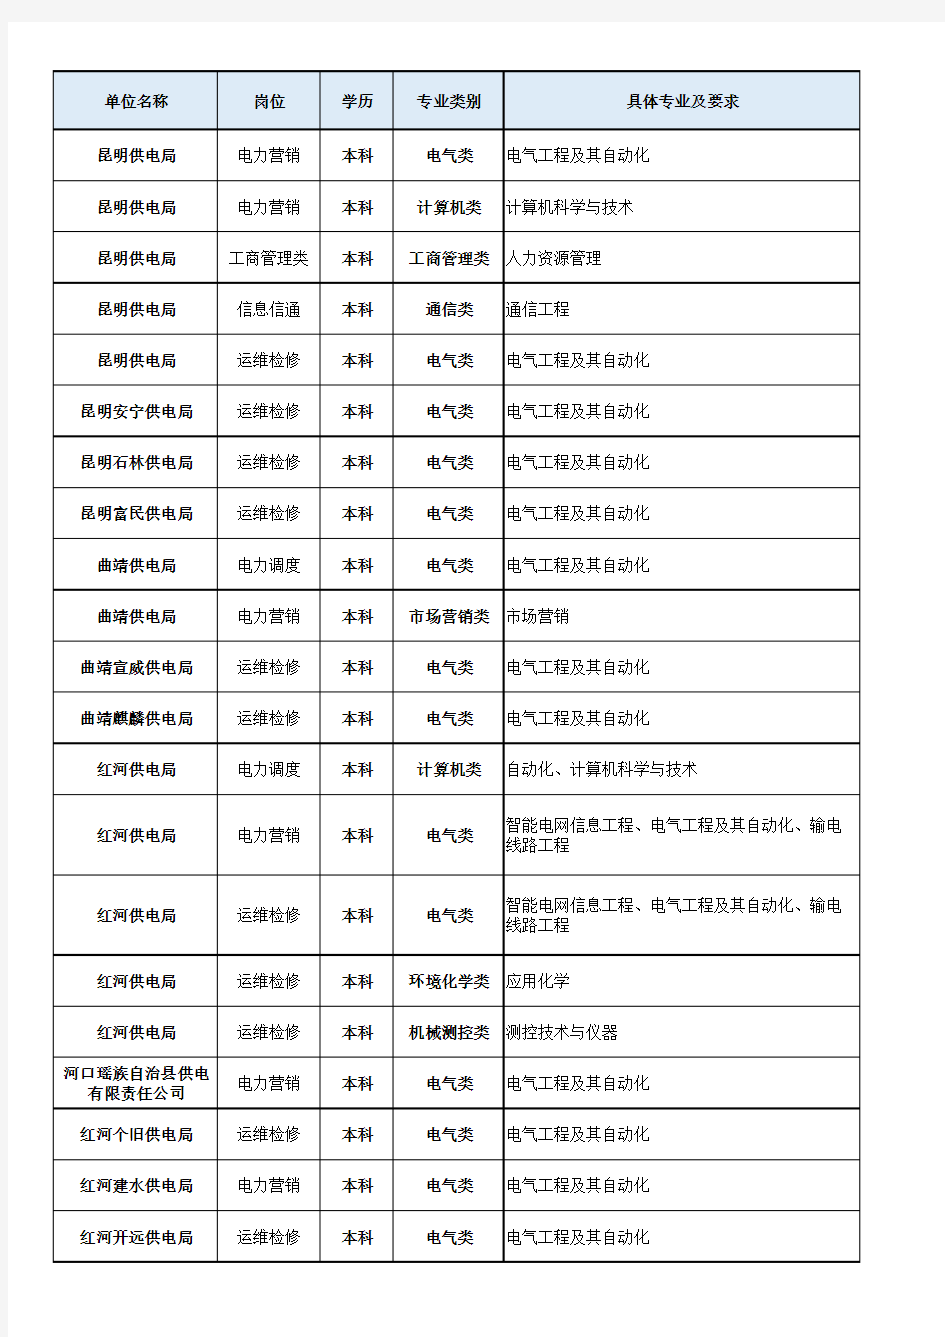 云南电网有限责任公司2020年校园招聘补充招聘公告-补充招聘岗位表